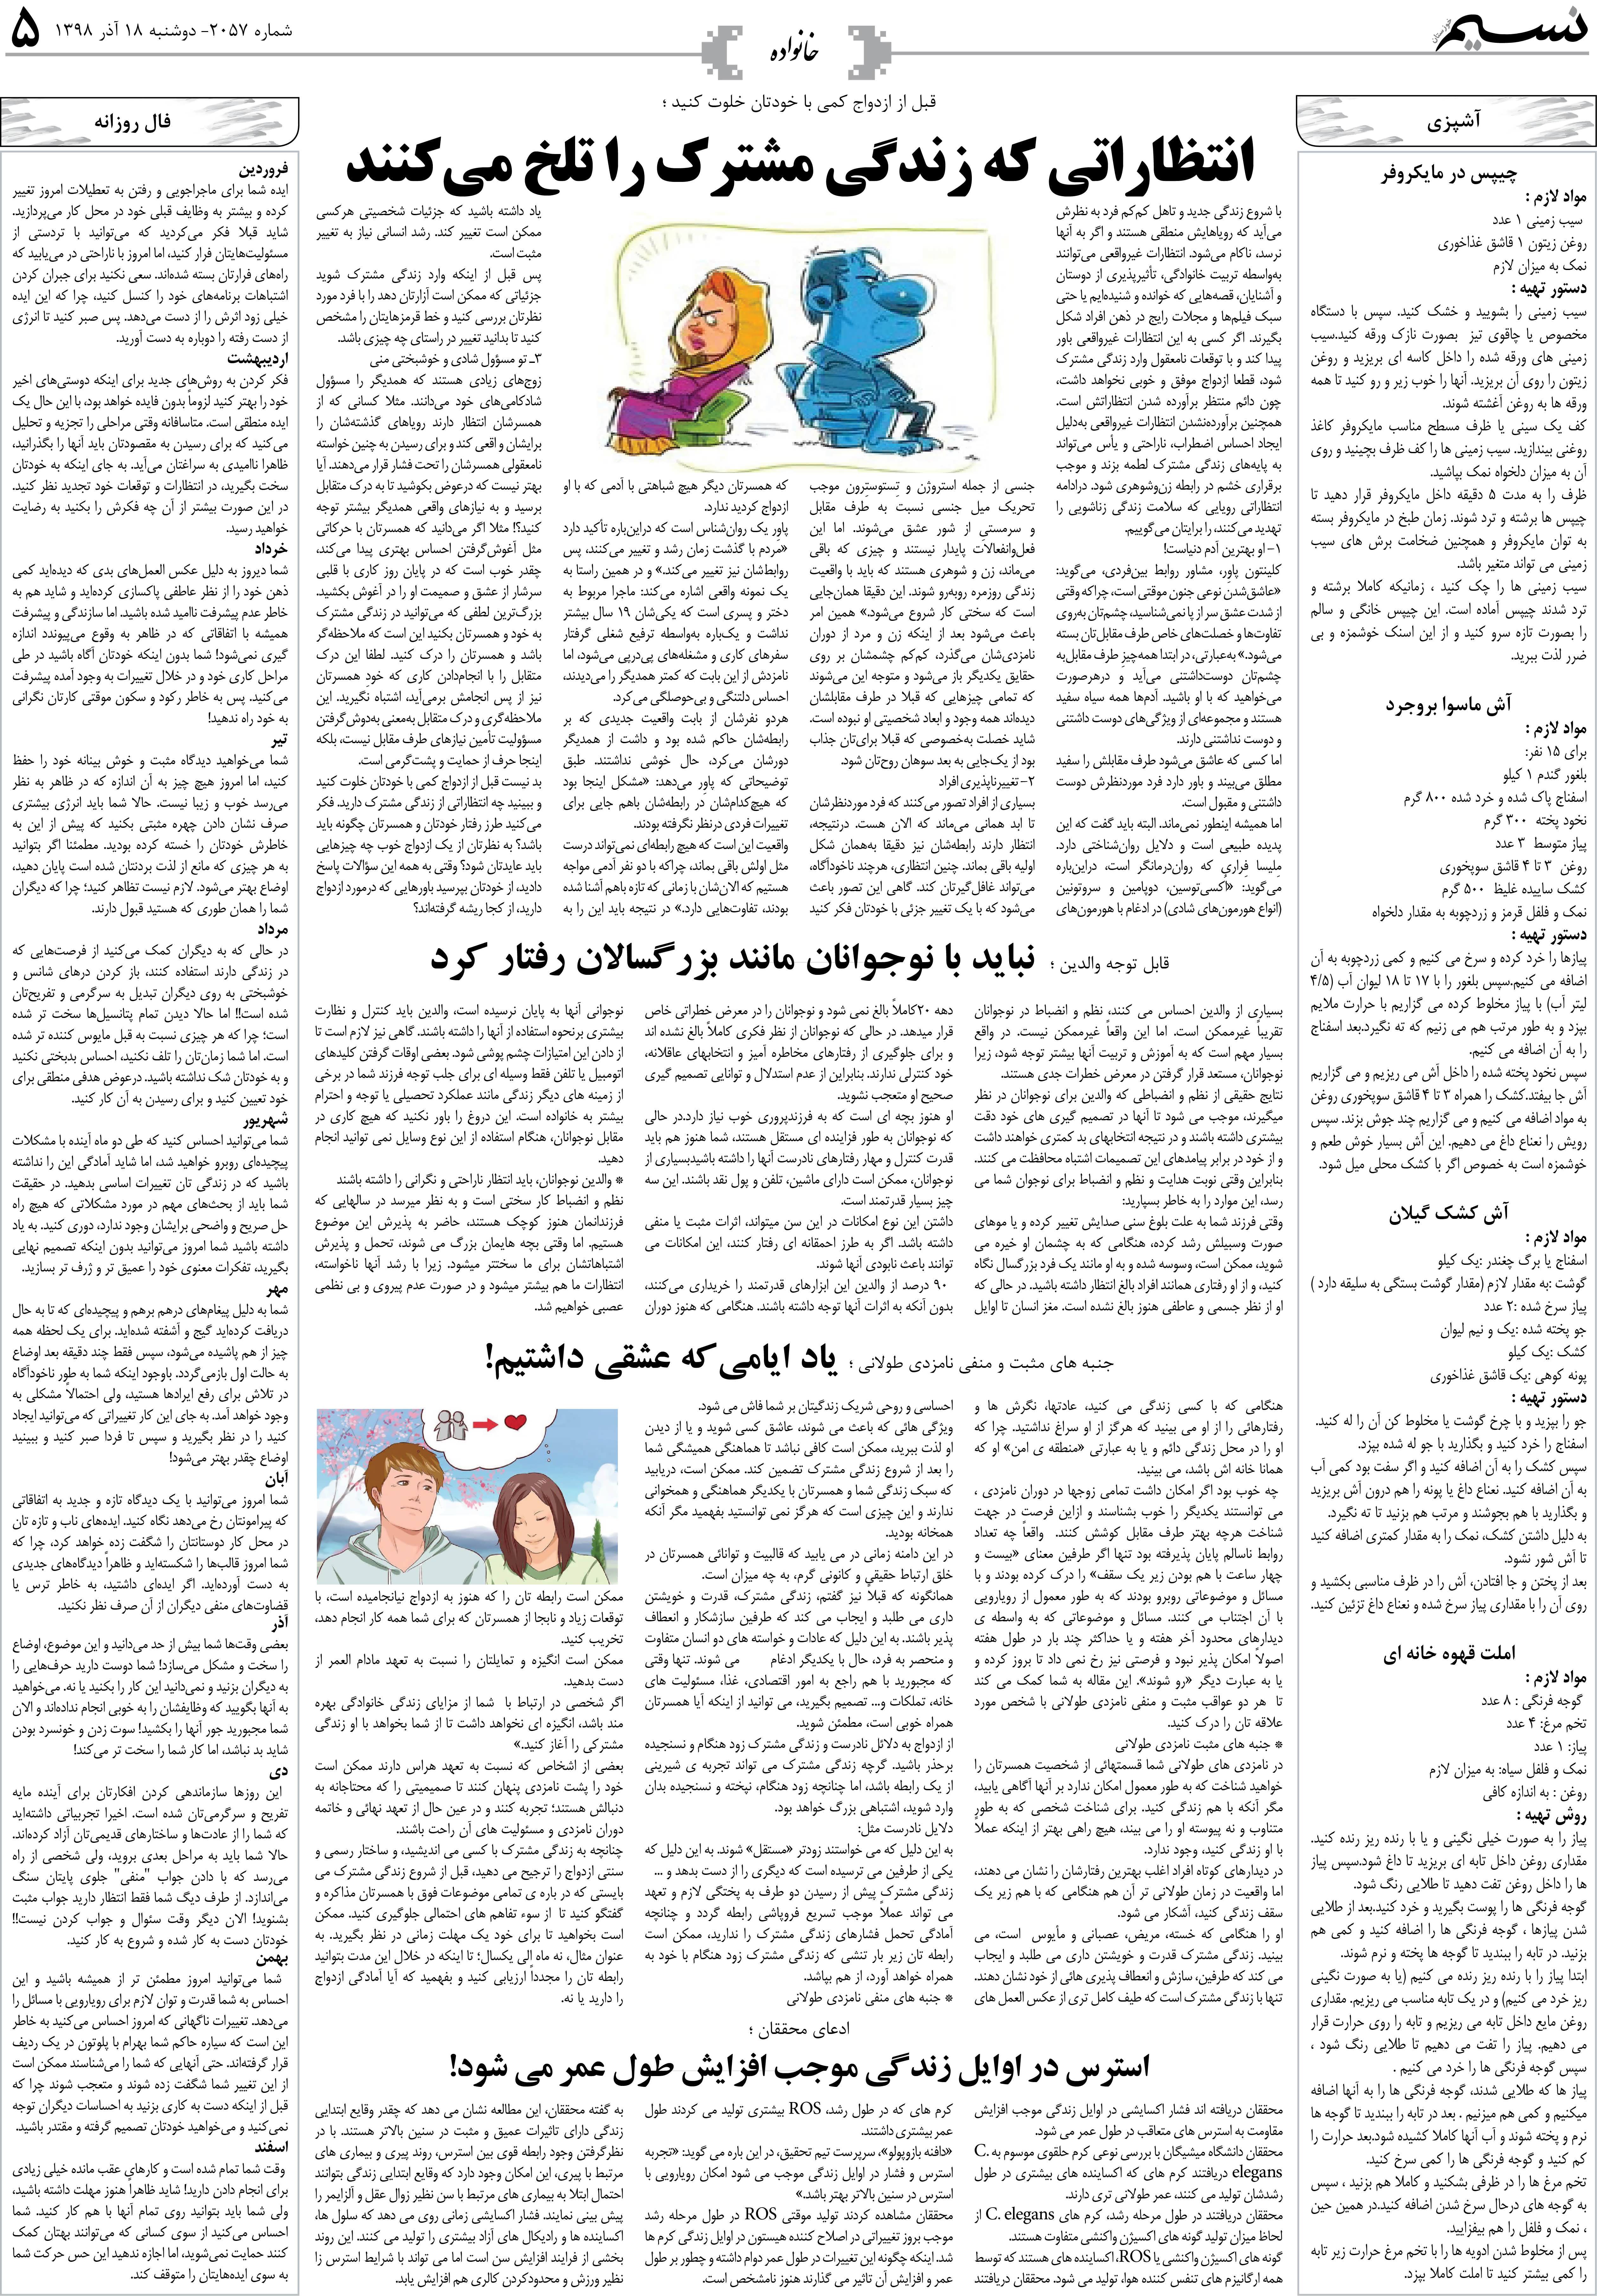 صفحه خانواده روزنامه نسیم شماره 2057